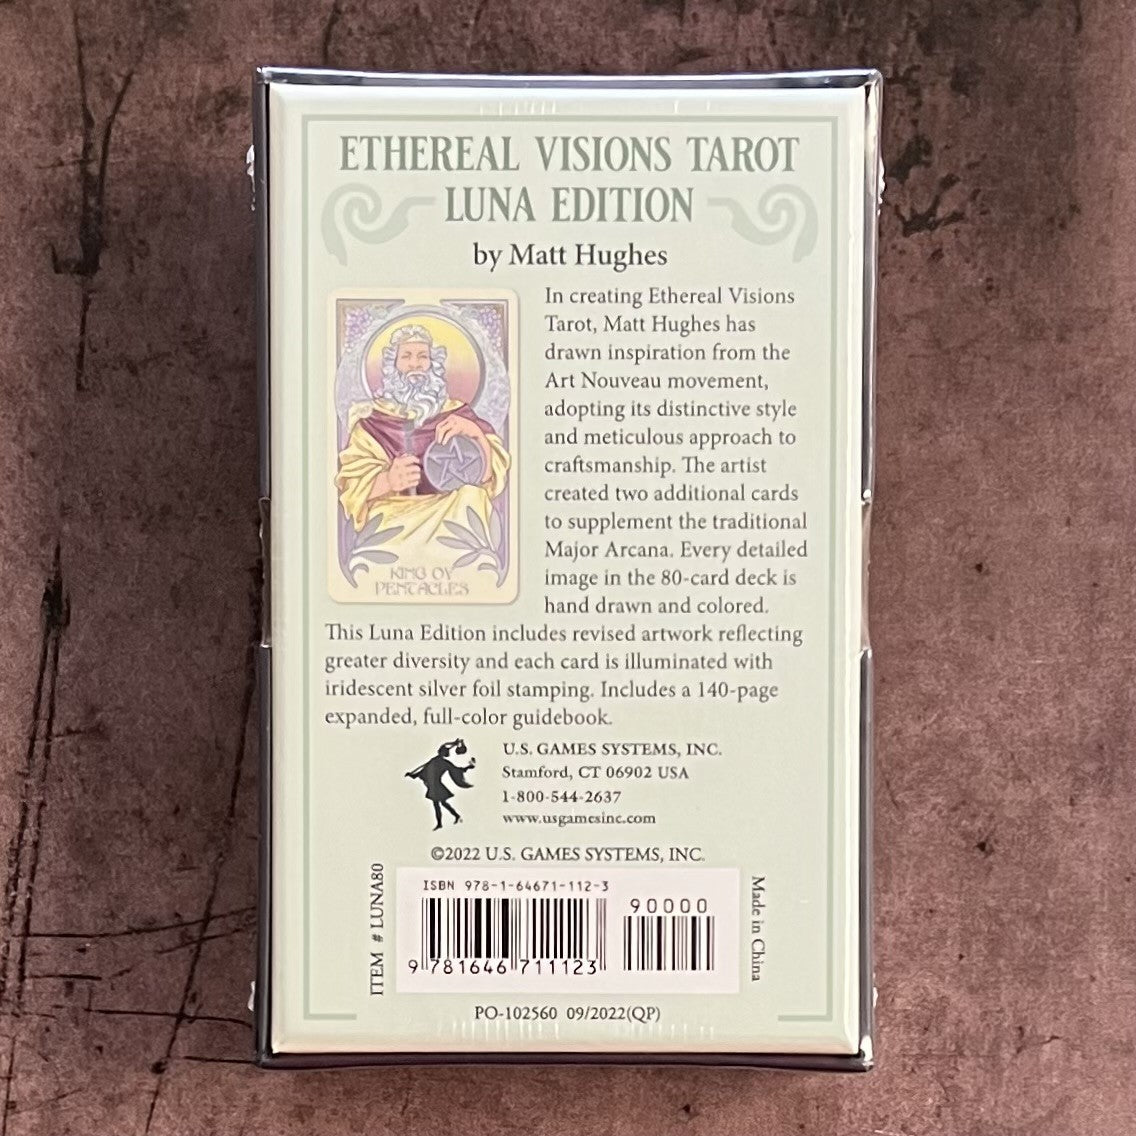 Ethereal Visions Tarot Luna Edition by Matt Hughes